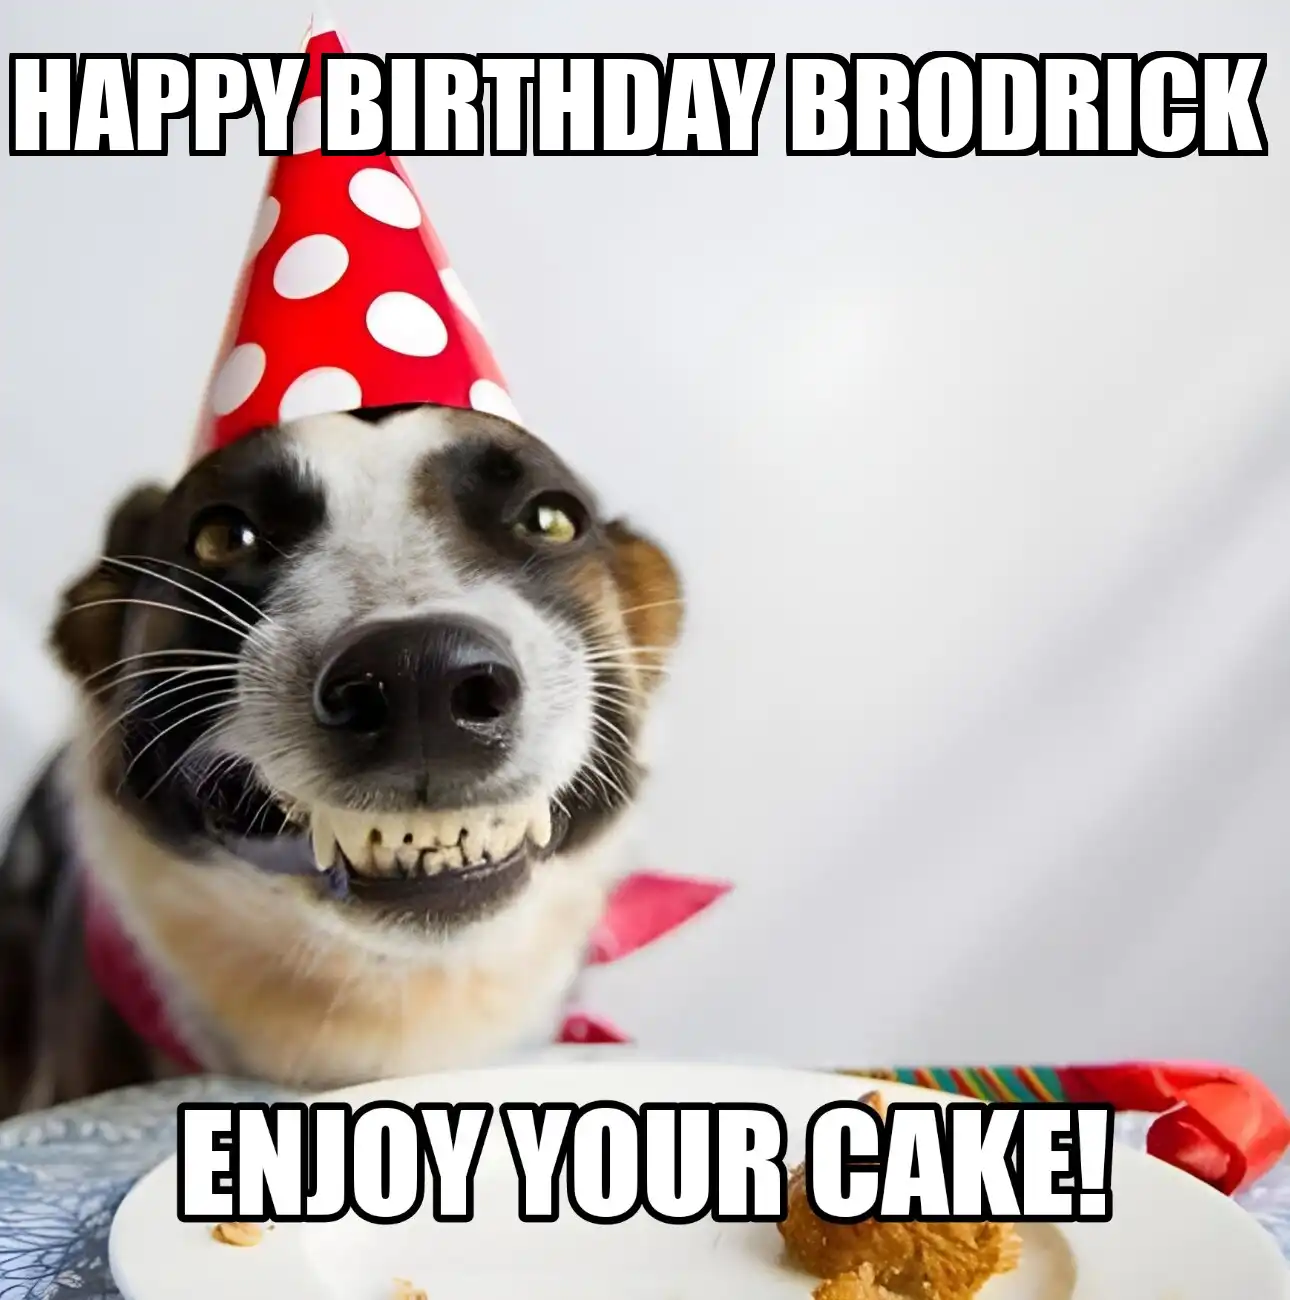 Happy Birthday Brodrick Enjoy Your Cake Dog Meme